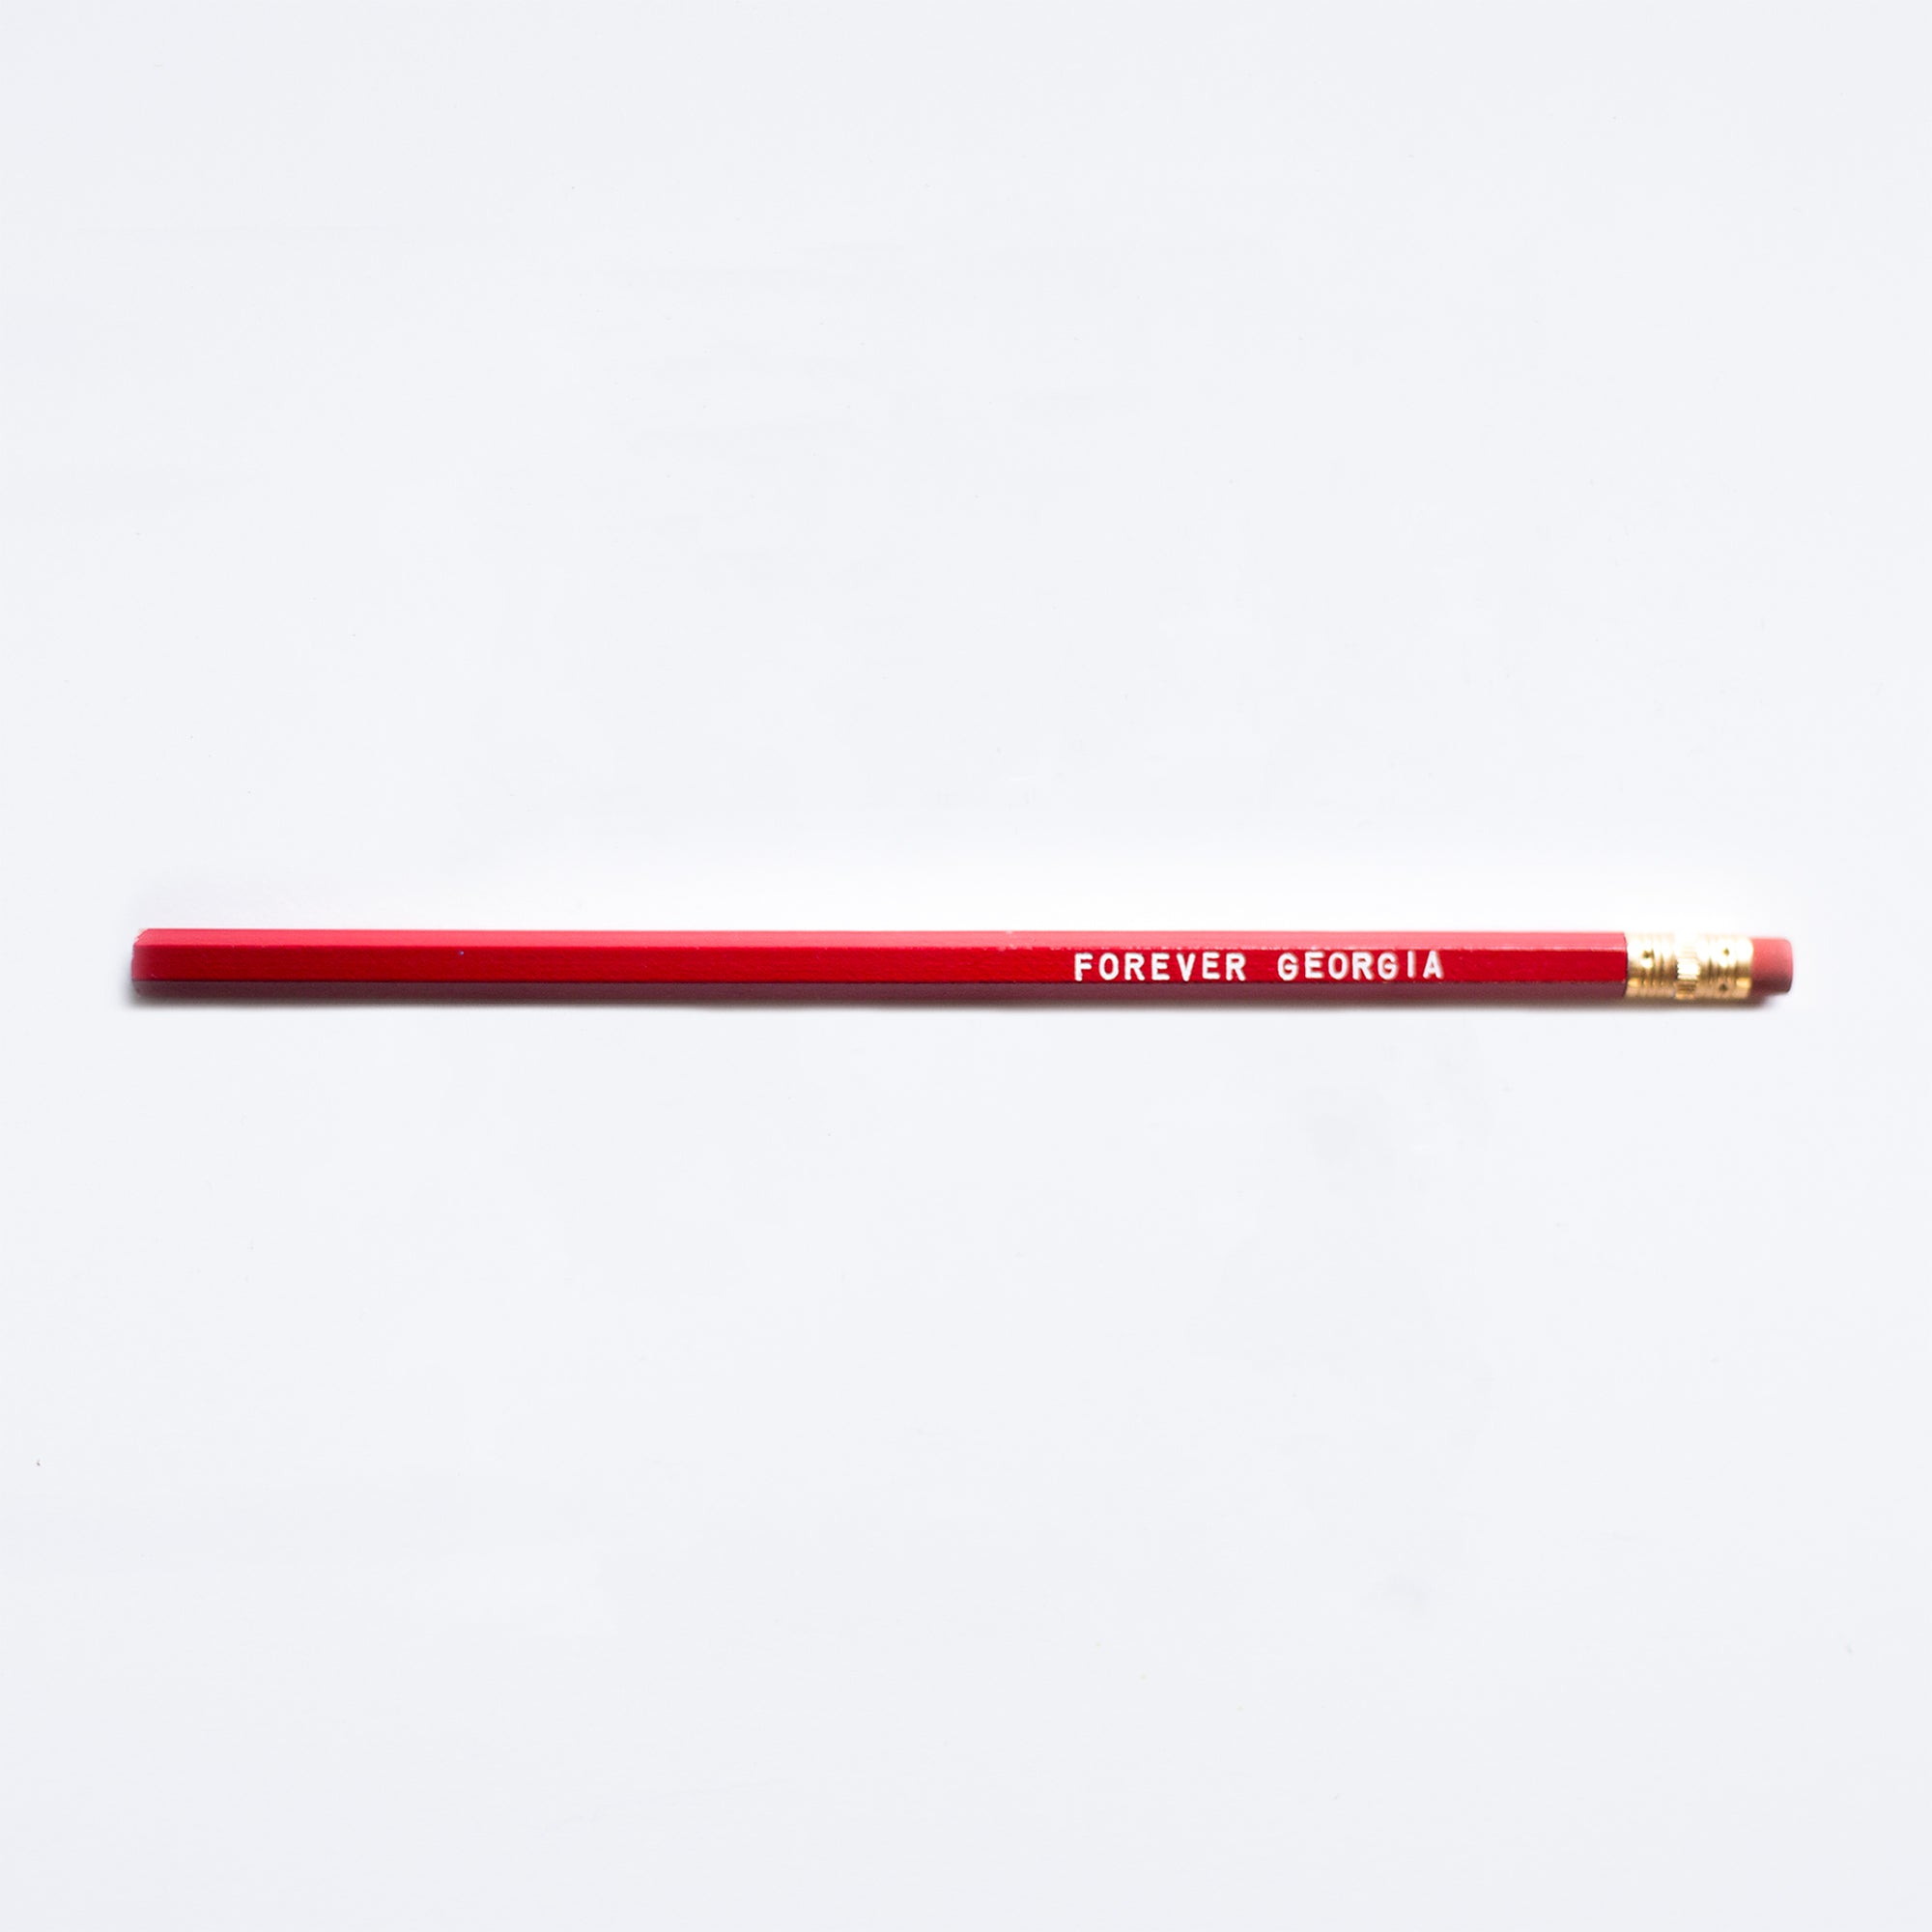 Forever Georgia Pencil